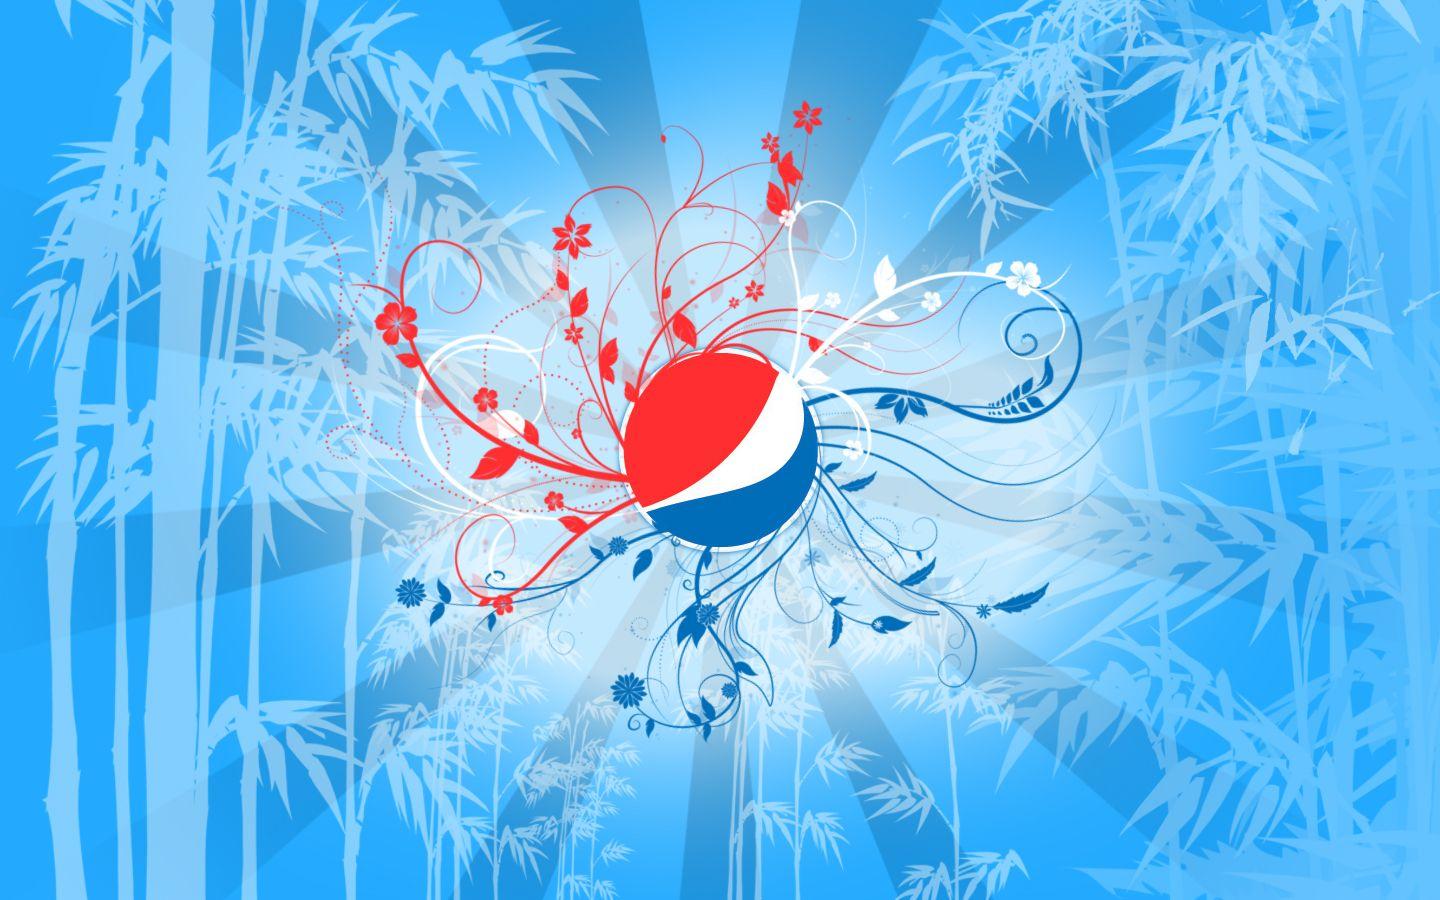 Pepsi wallpaper. HD Wallpaper. Pepsi and Wallpaper